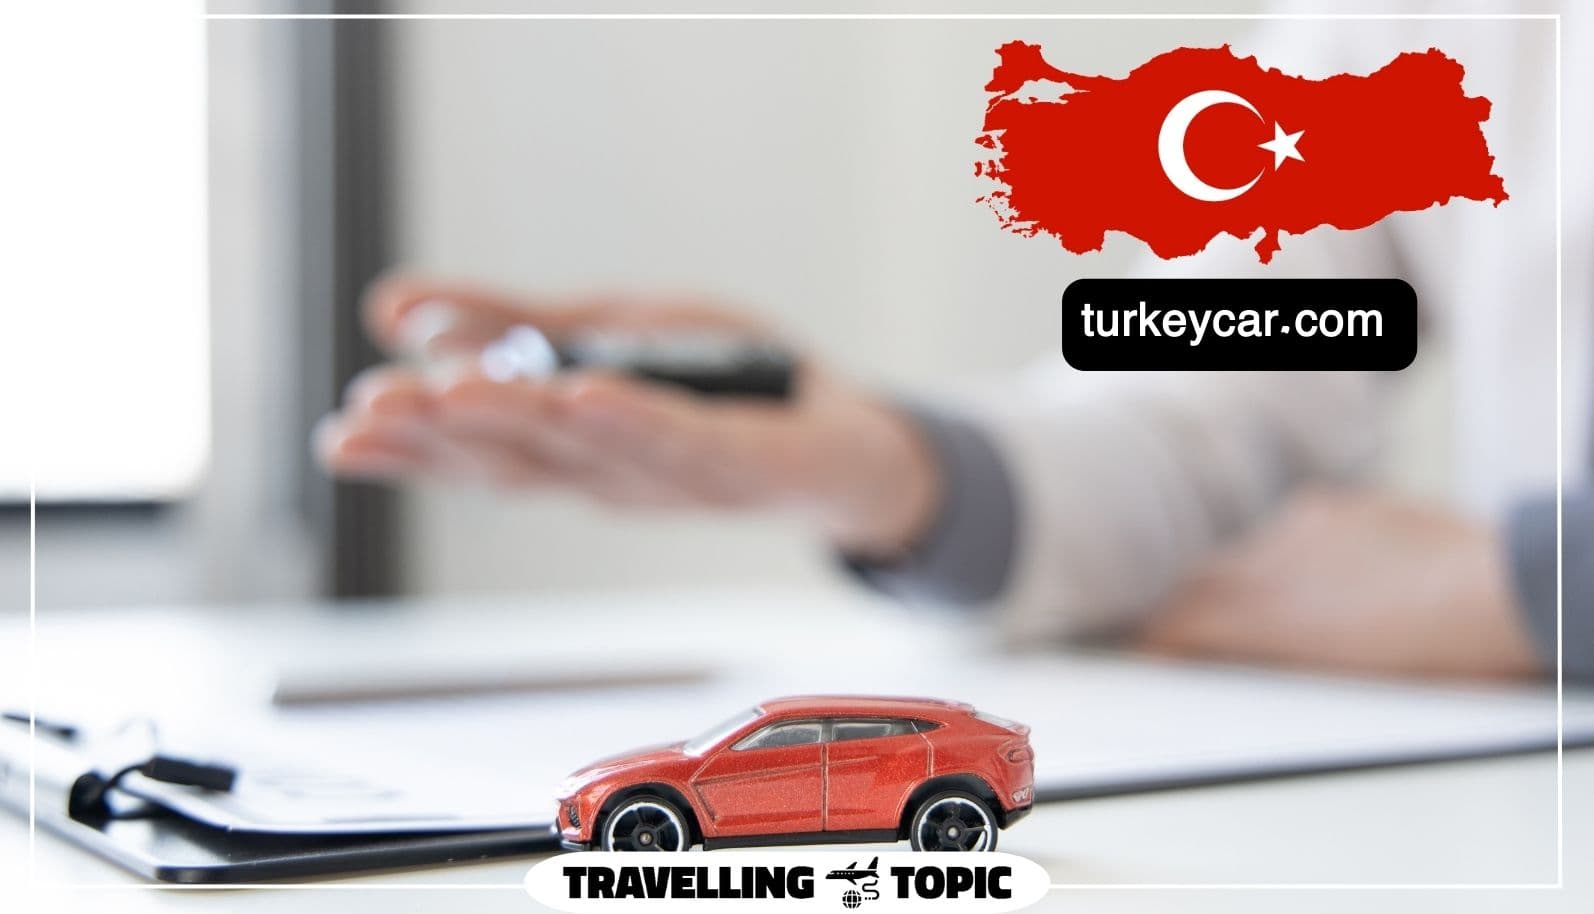 turkeycar.com